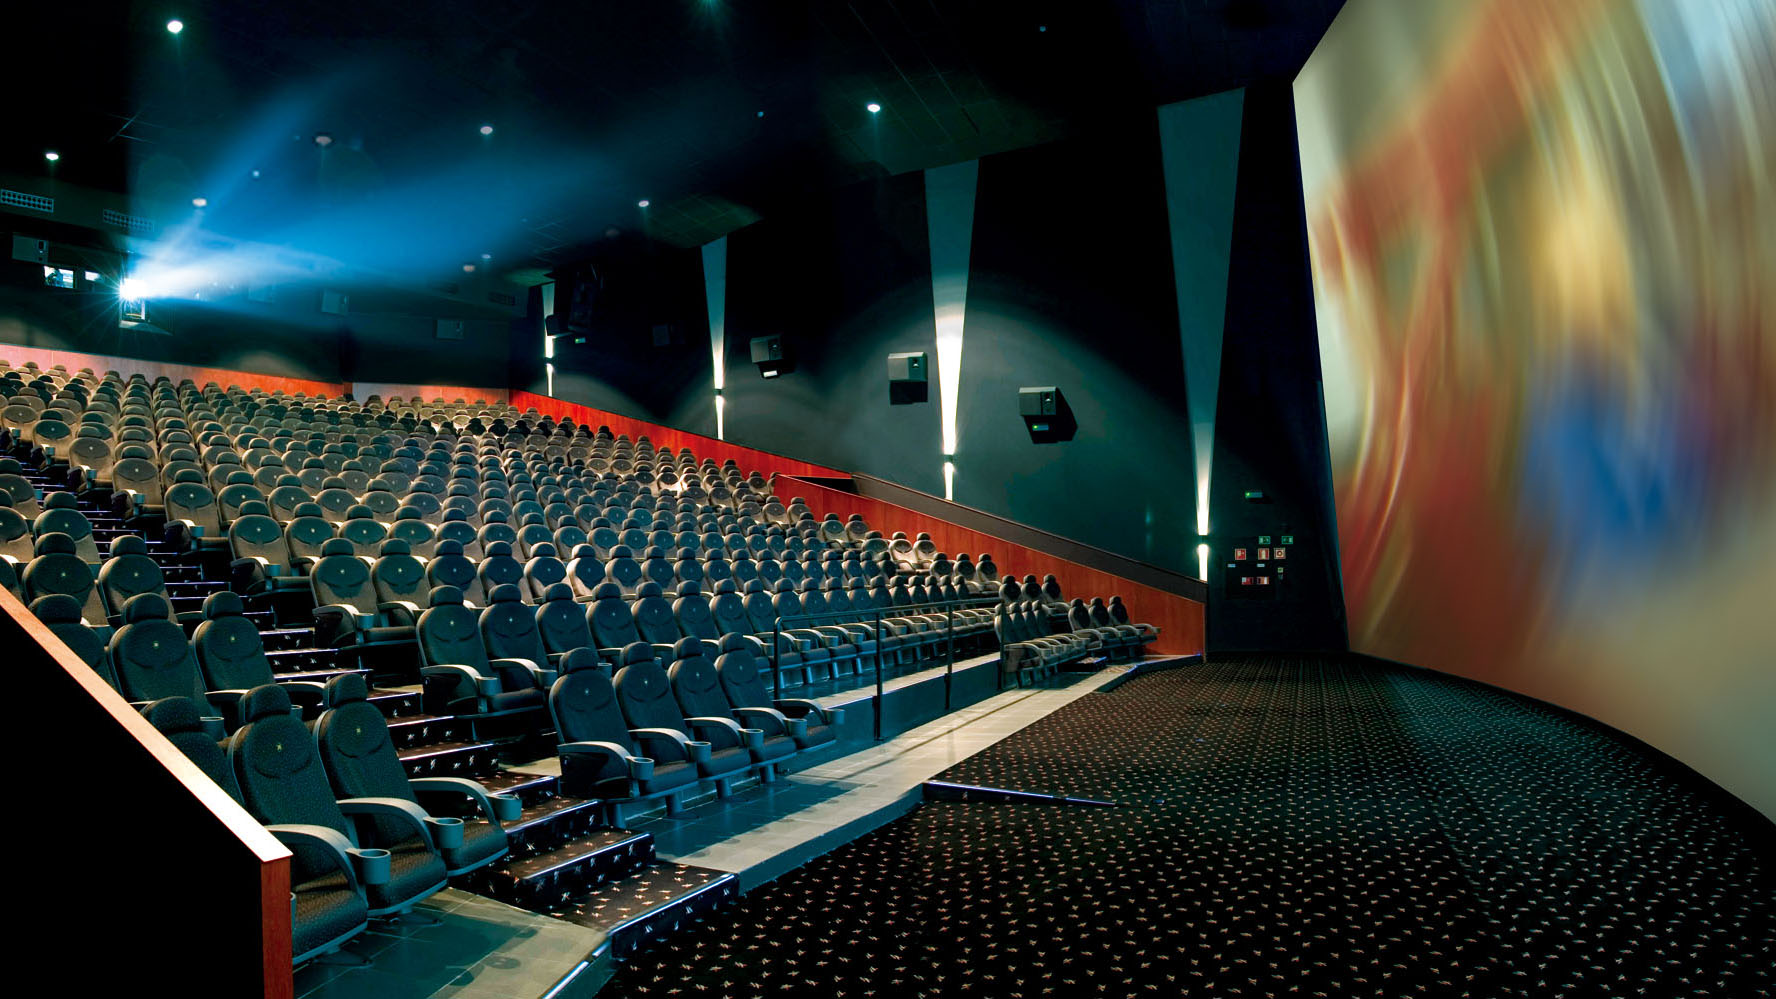 10 Bioskop Termewah di Dunia | Harga Tiket Nonton sampai Jutaan!